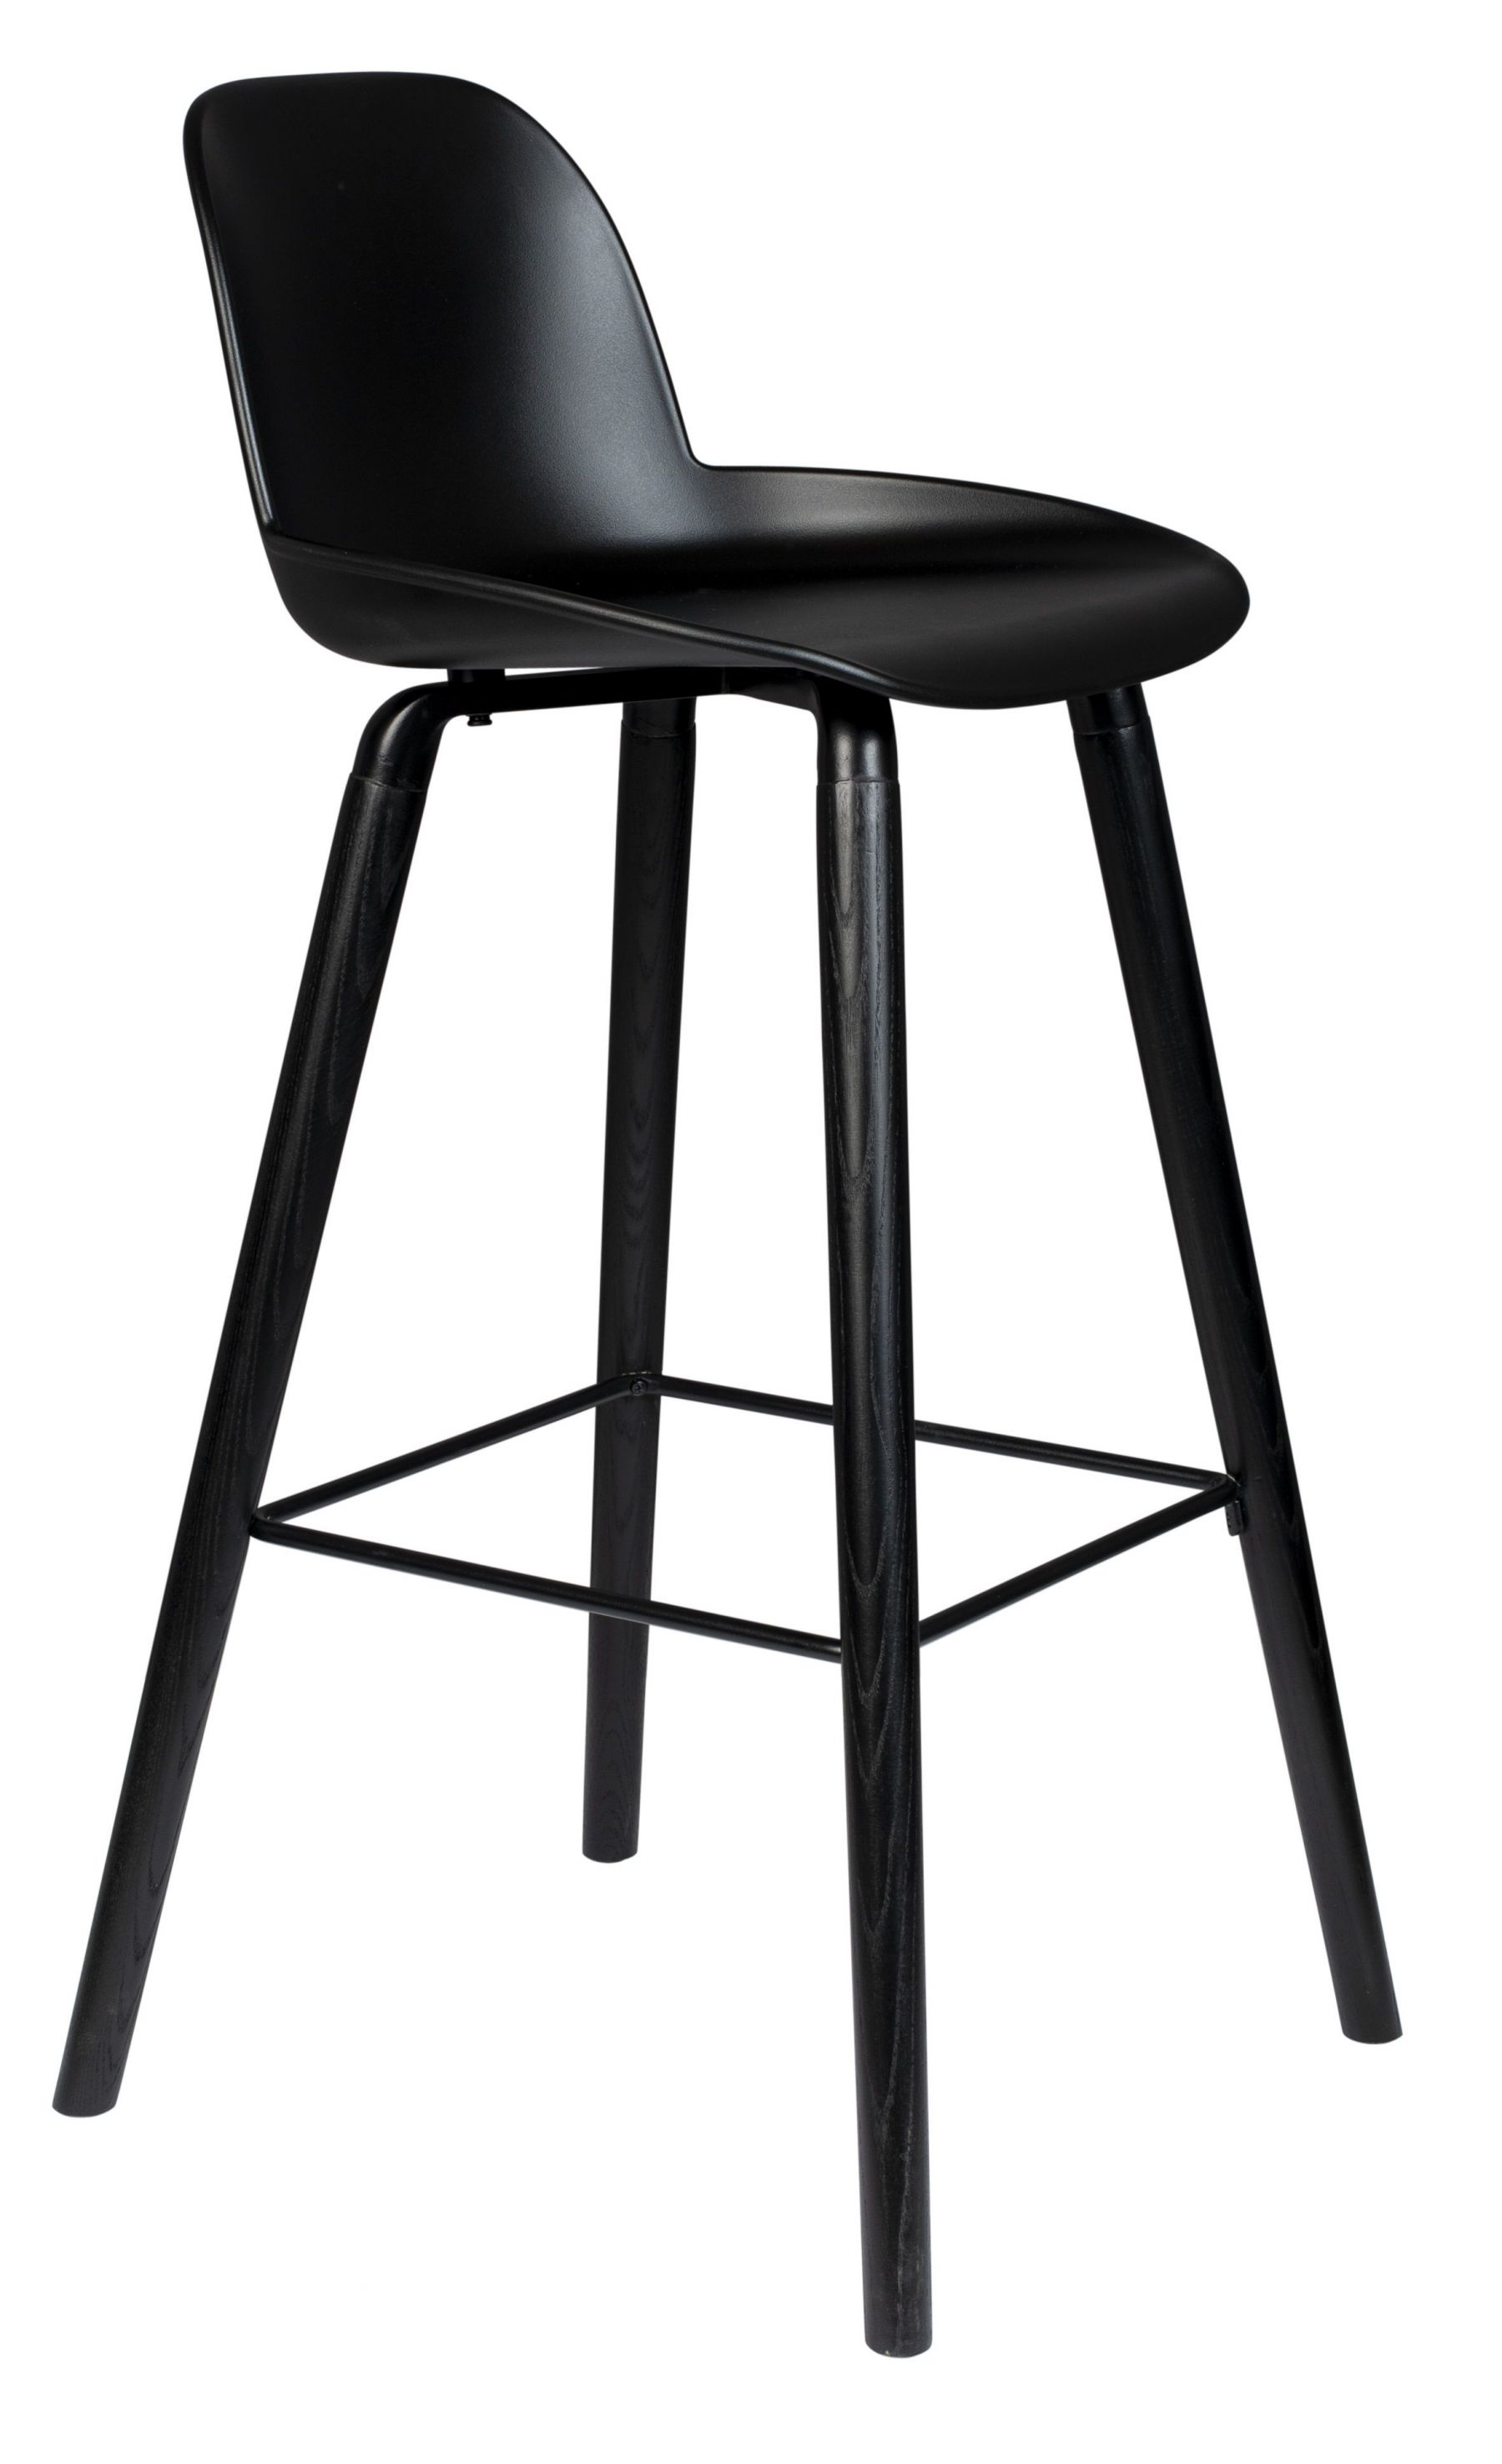 Černá plastová barová židle ZUIVER ALBERT KUIP ALL BLACK 76 cm - Designovynabytek.cz